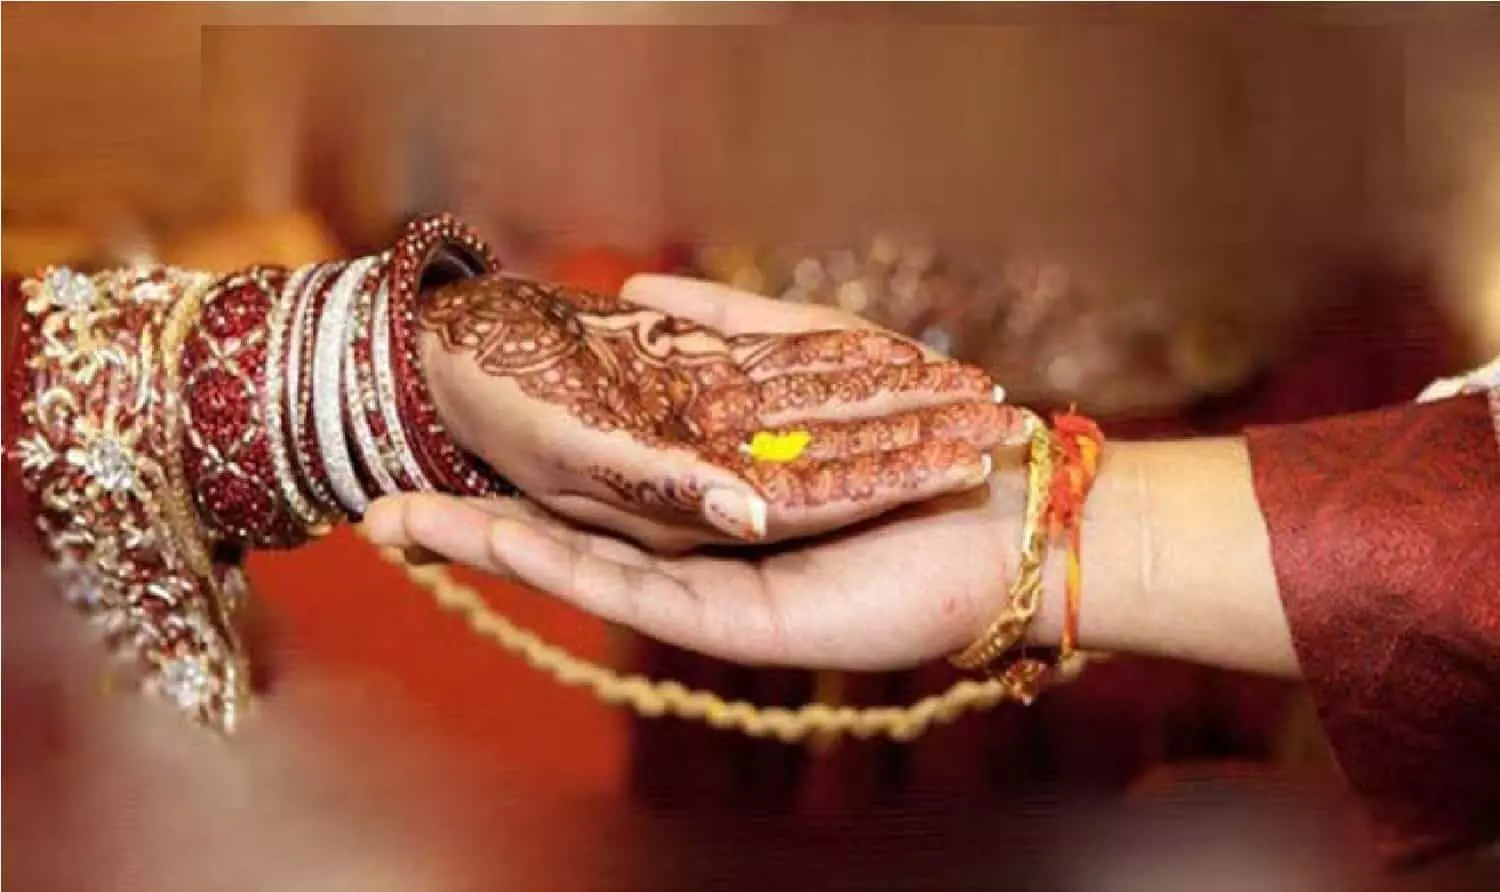 MP Marriage Scheme Update: एमपी में विवाह सहायता योजना में हुई भयंकर गड़बड़ी, 10 जनपद में शादियों की पड़ताल शुरू, विभाग ने कलेक्टर्स को दिए निर्देश